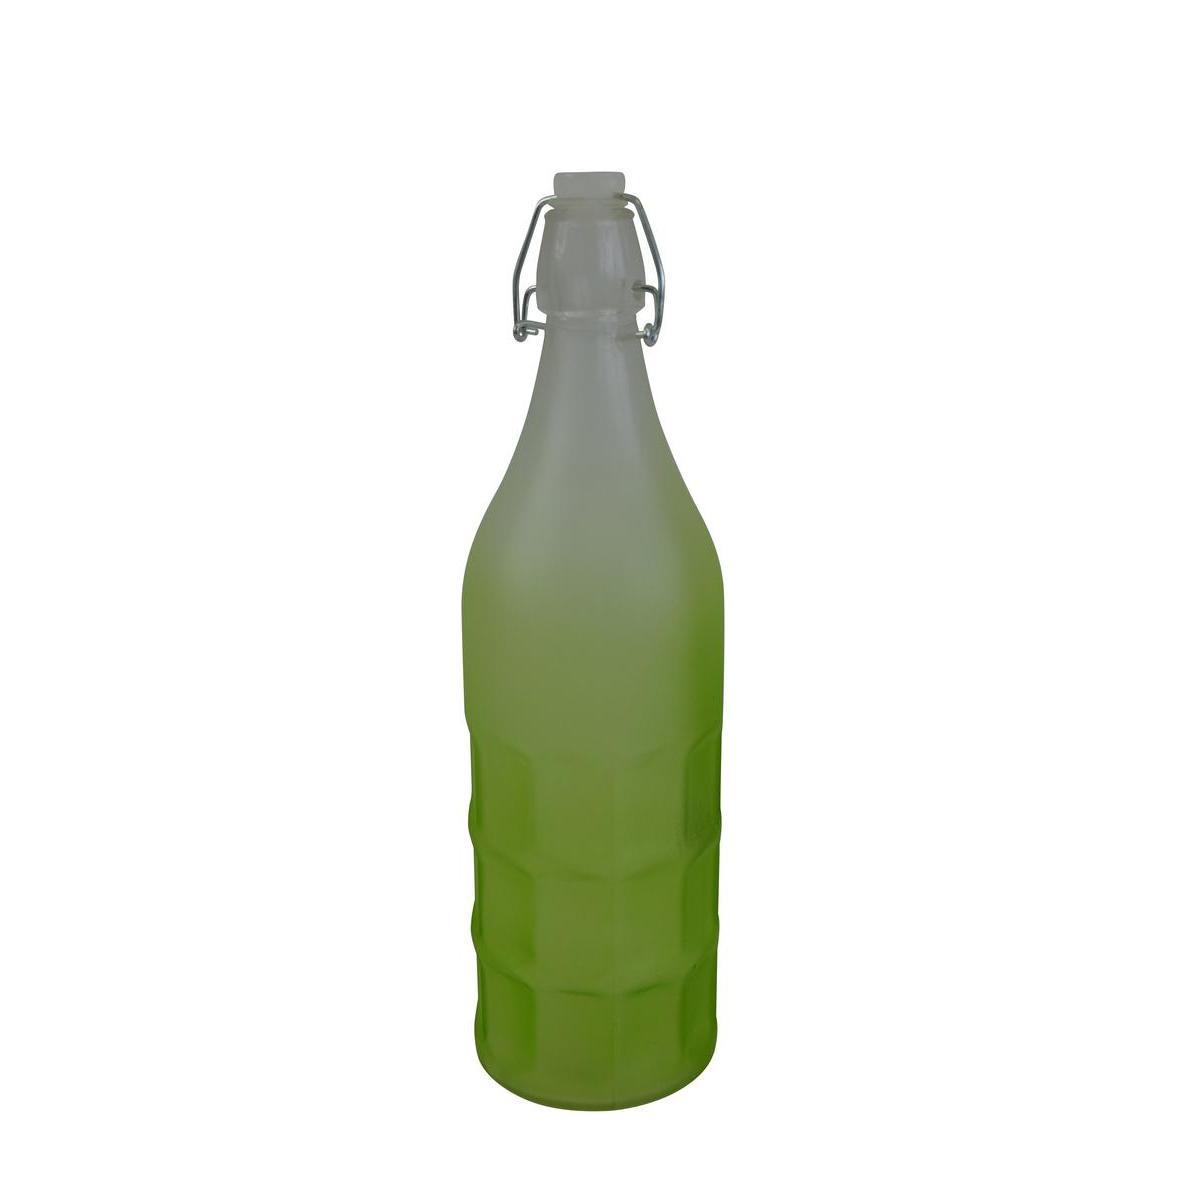 Bouteille limonade en verre - 1 Litre - Vert anis